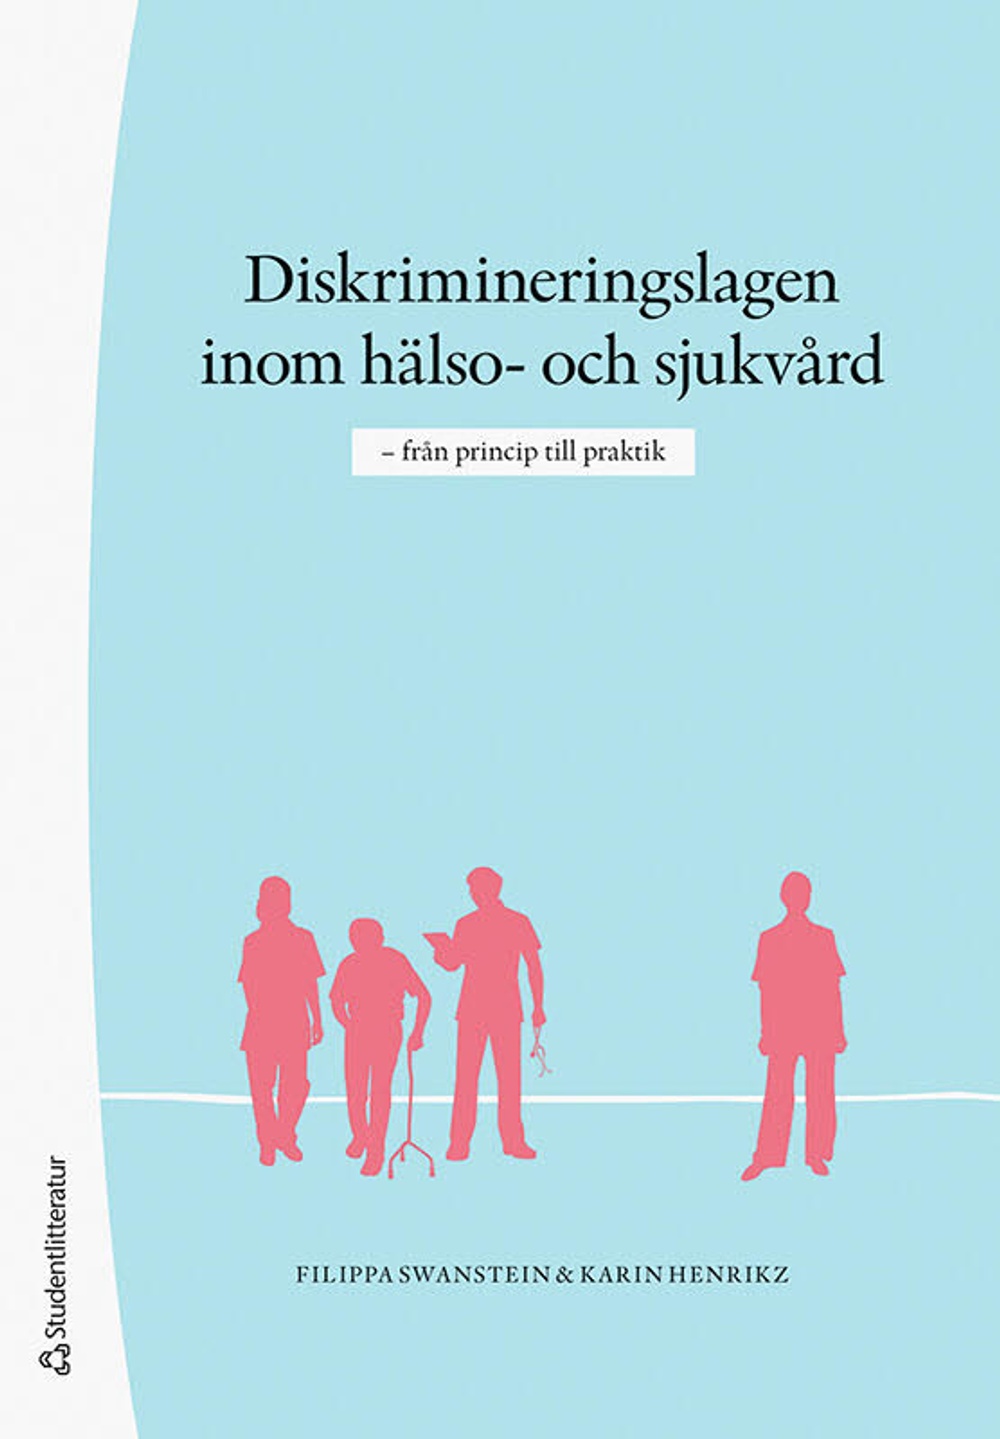 Diskrimineringslagen inom hälso- och sjukvård, från princip till praktik. Av Filippa Swanstein och Karin Henrikz.